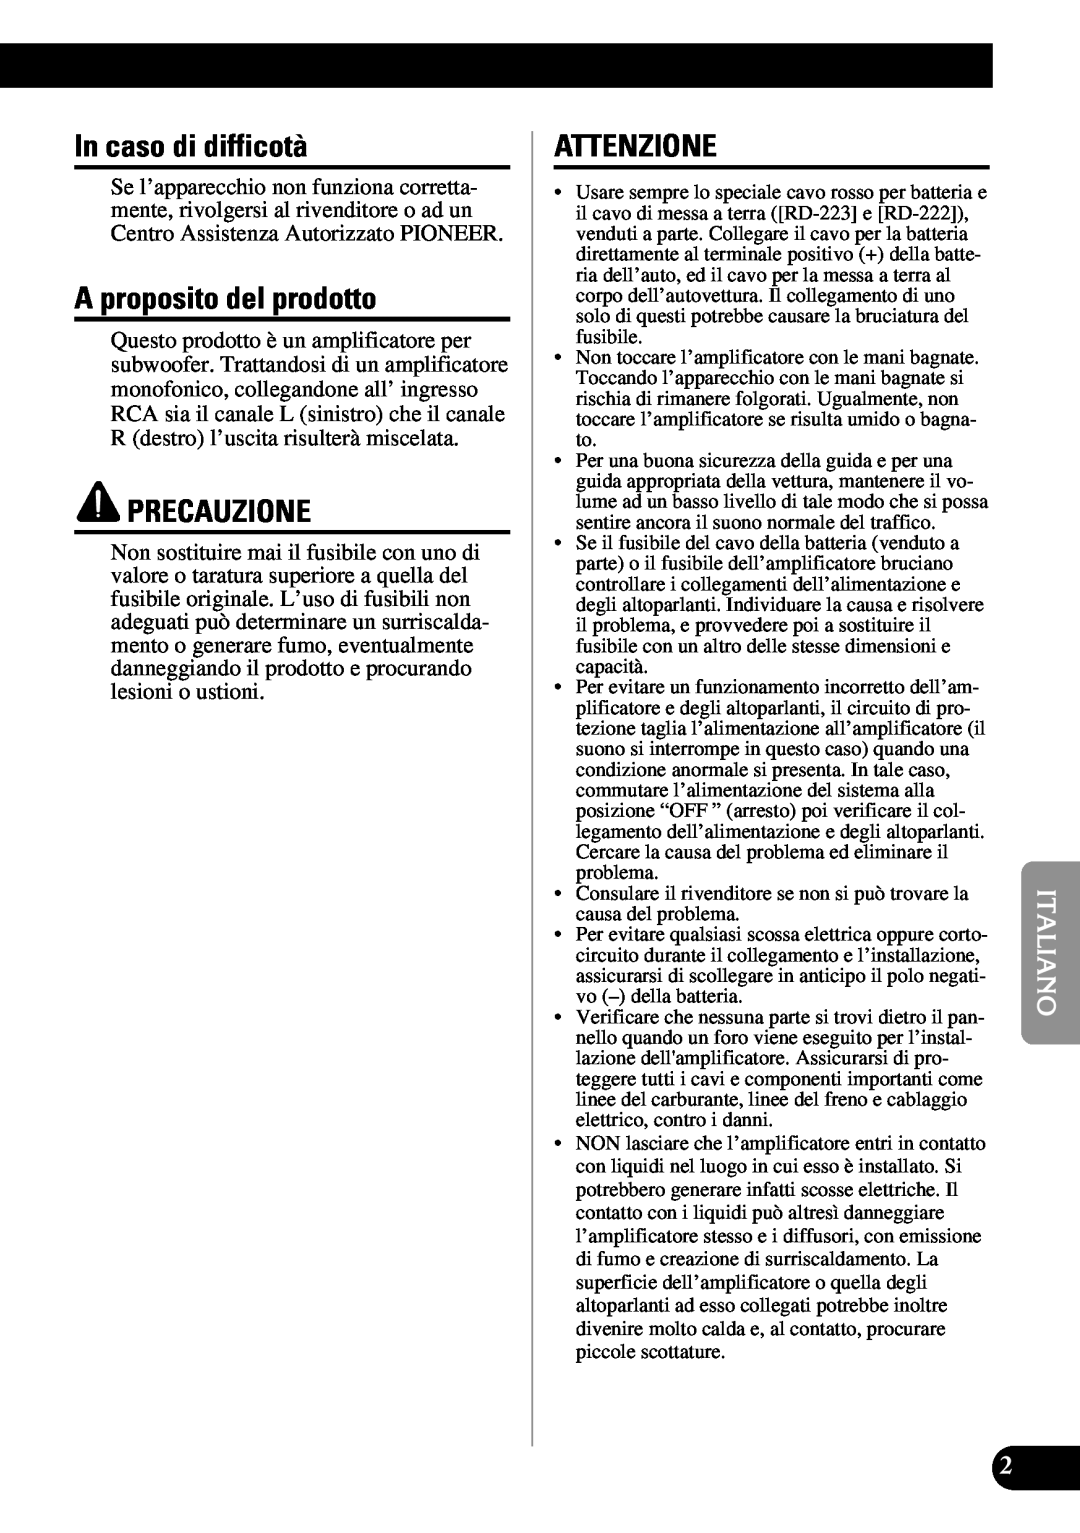 Pioneer PRS-D1100M owner manual In caso di difficotà, A proposito del prodotto, Precauzione, Attenzione 